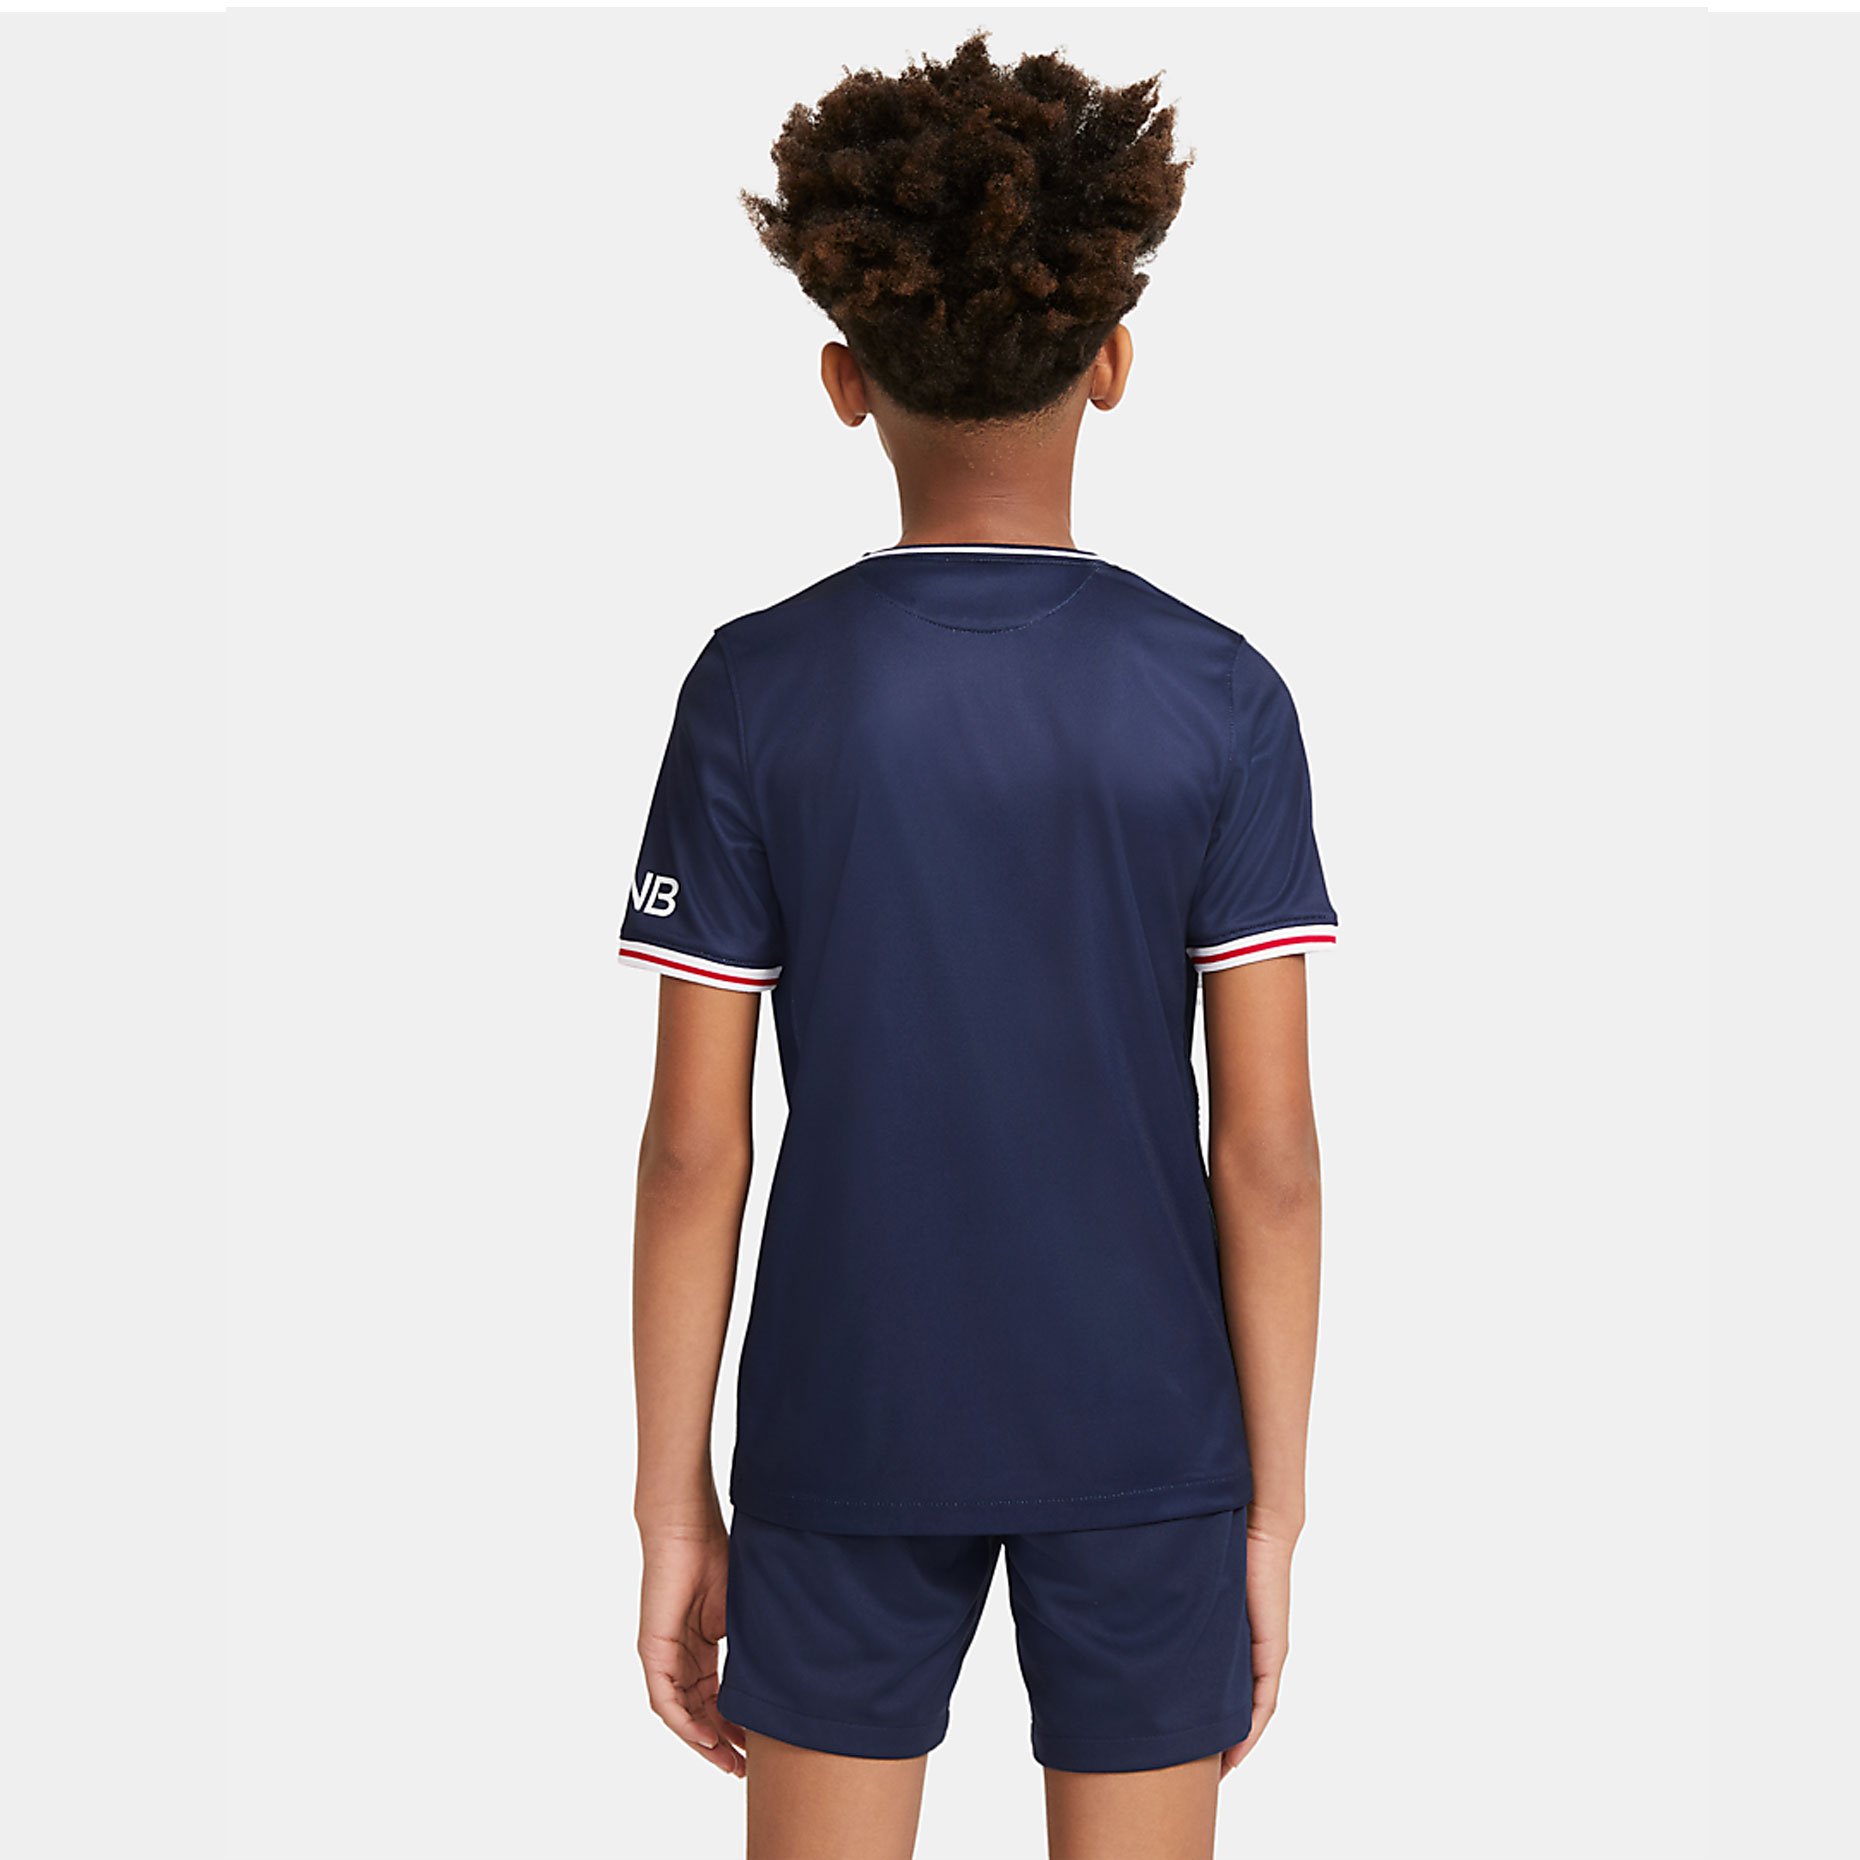 Домашняя детская игровая футболка Nike ФК «Пари Сен-Жермен» (ПСЖ/PSG) 2020/21